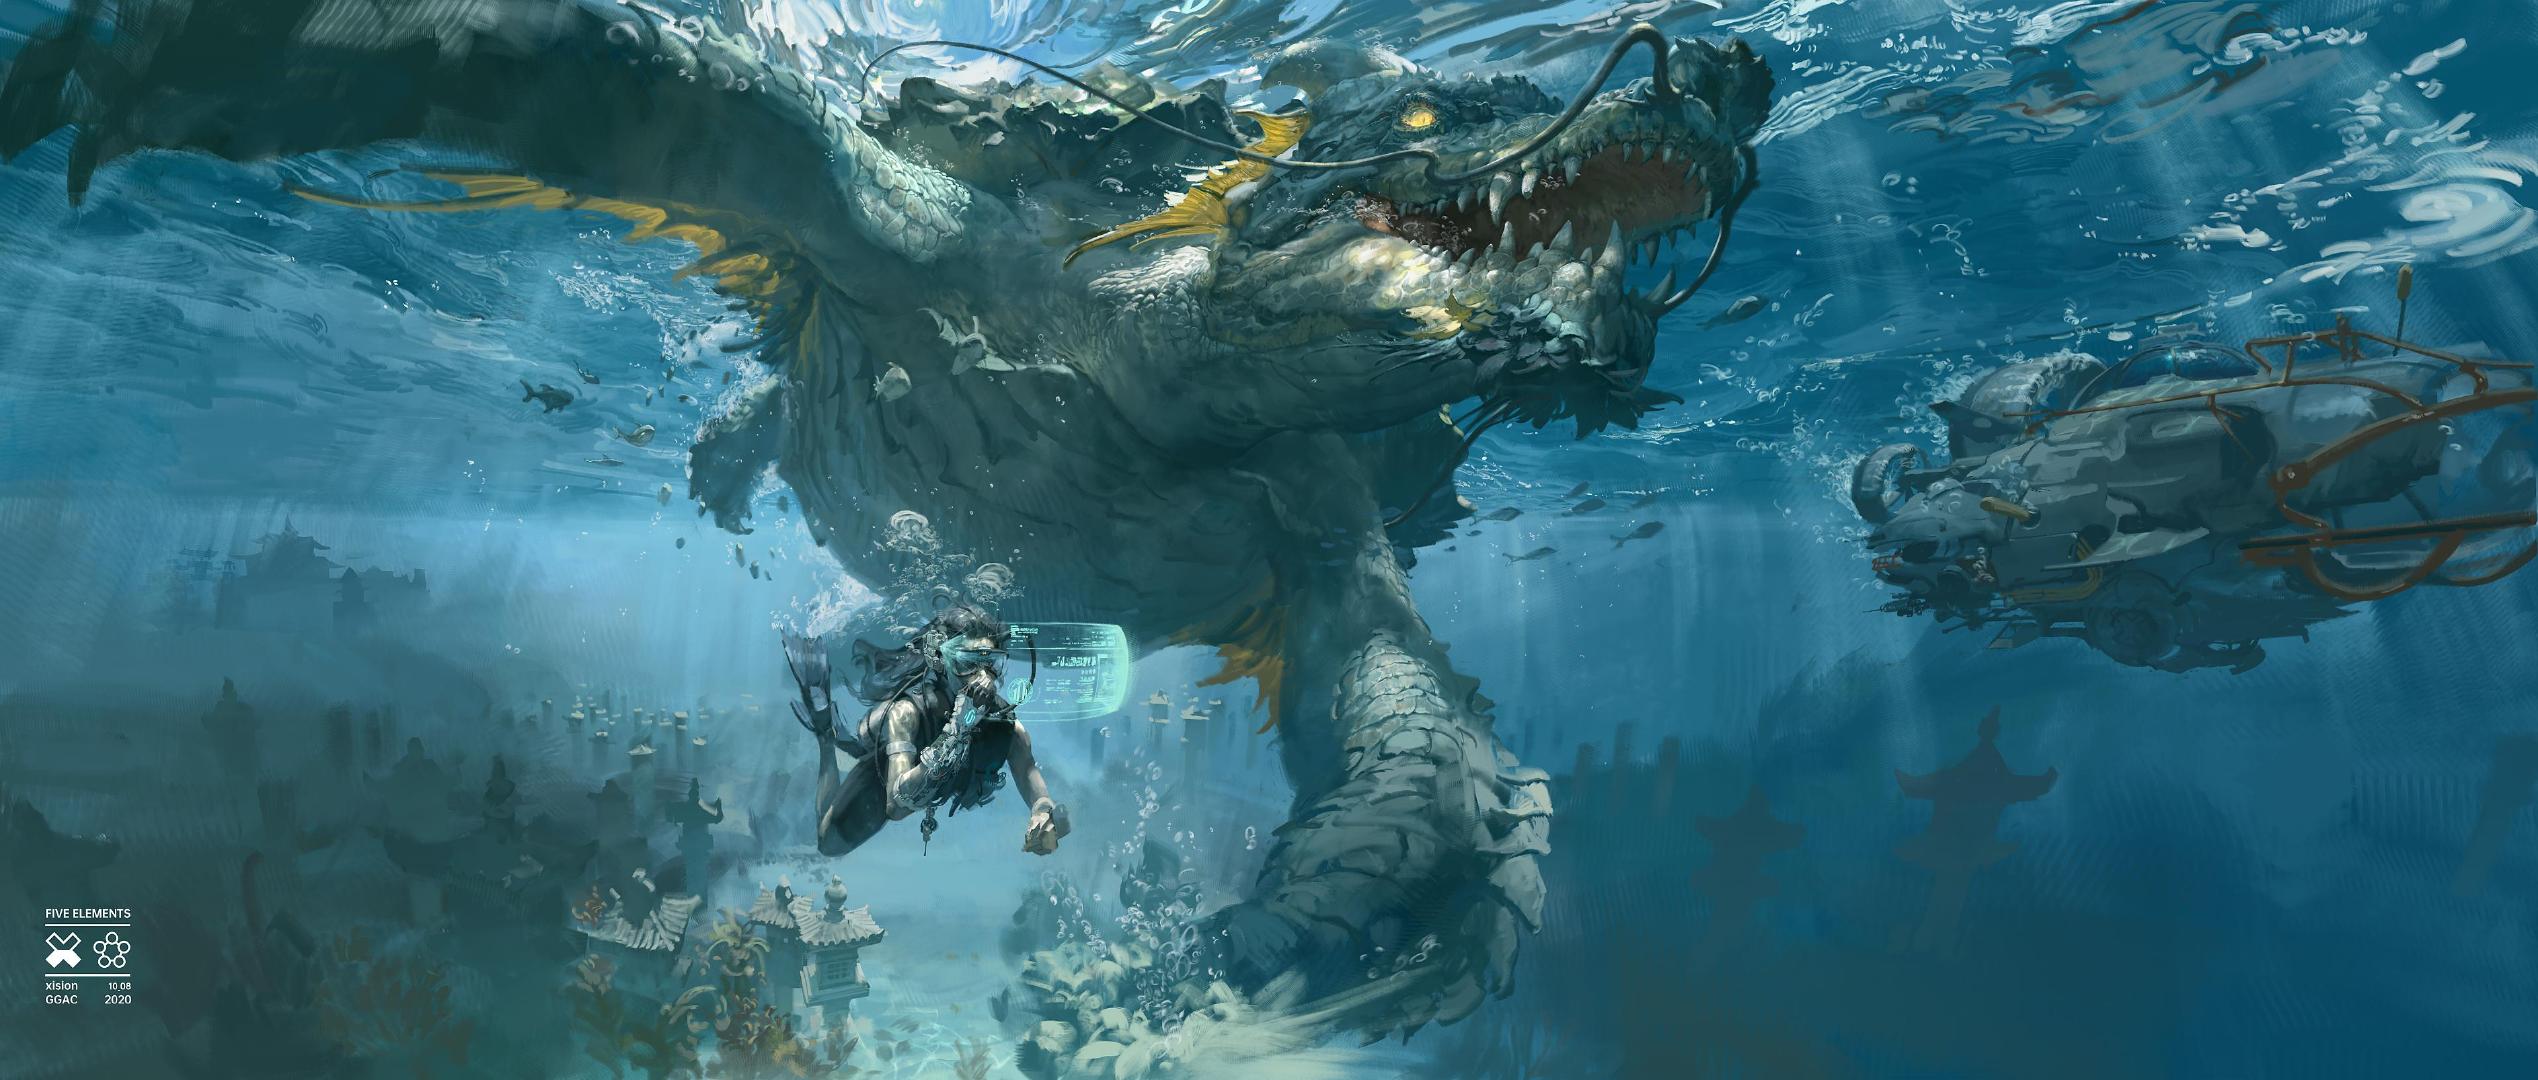 General 2538x1080 digital art underwater artwork animals creature